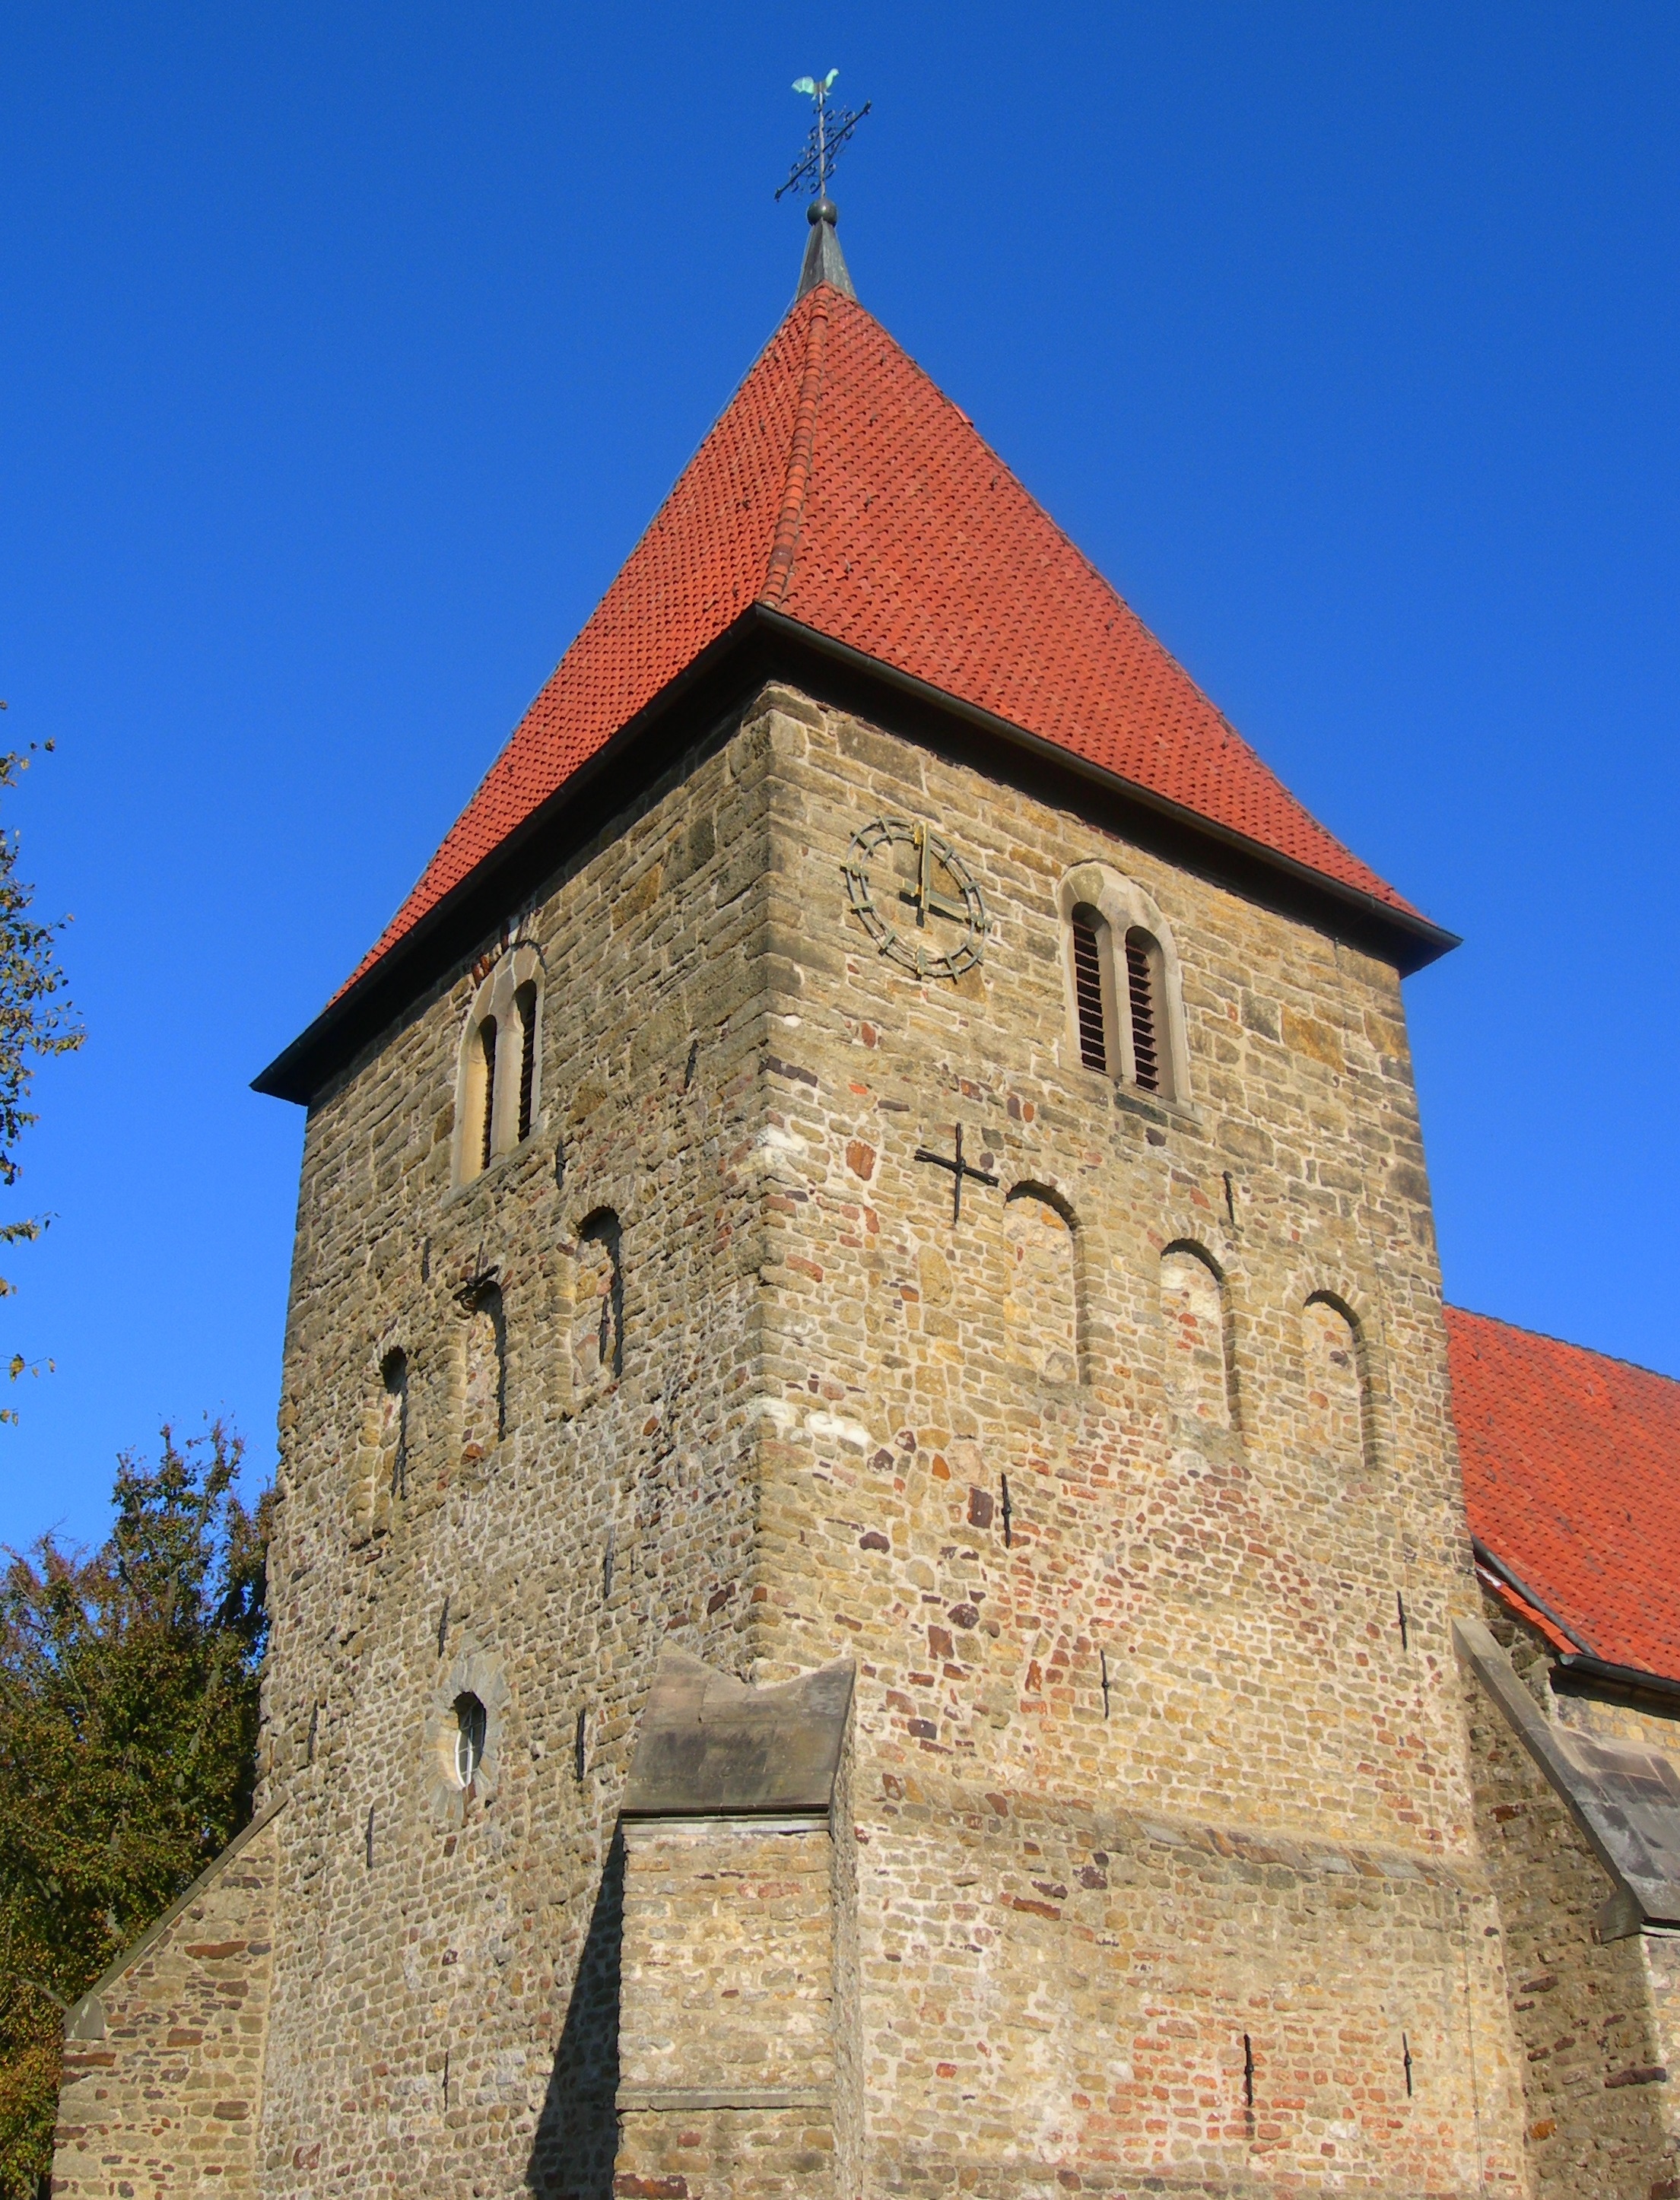 Kirchturm aus Naturstein mit rotem Ziegeldach